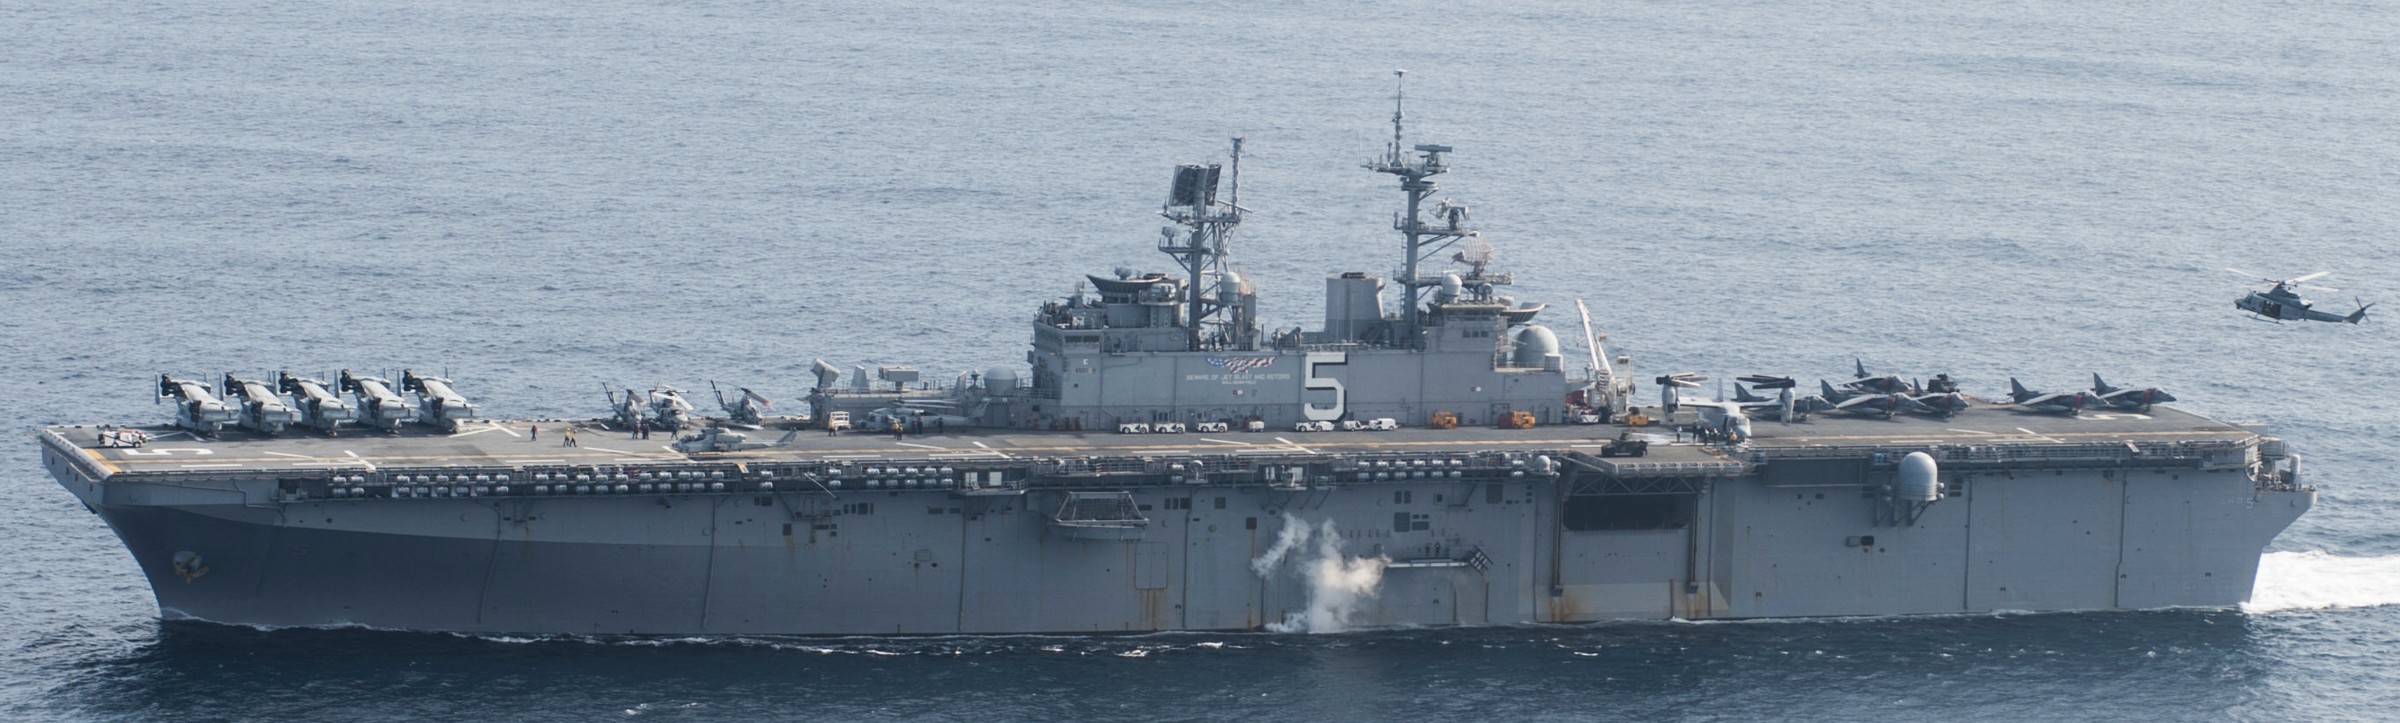 lhd-5 uss bataan wasp class amphibious assault ship dock landing helicopter us navy vmm-365 marines arg meuex 117